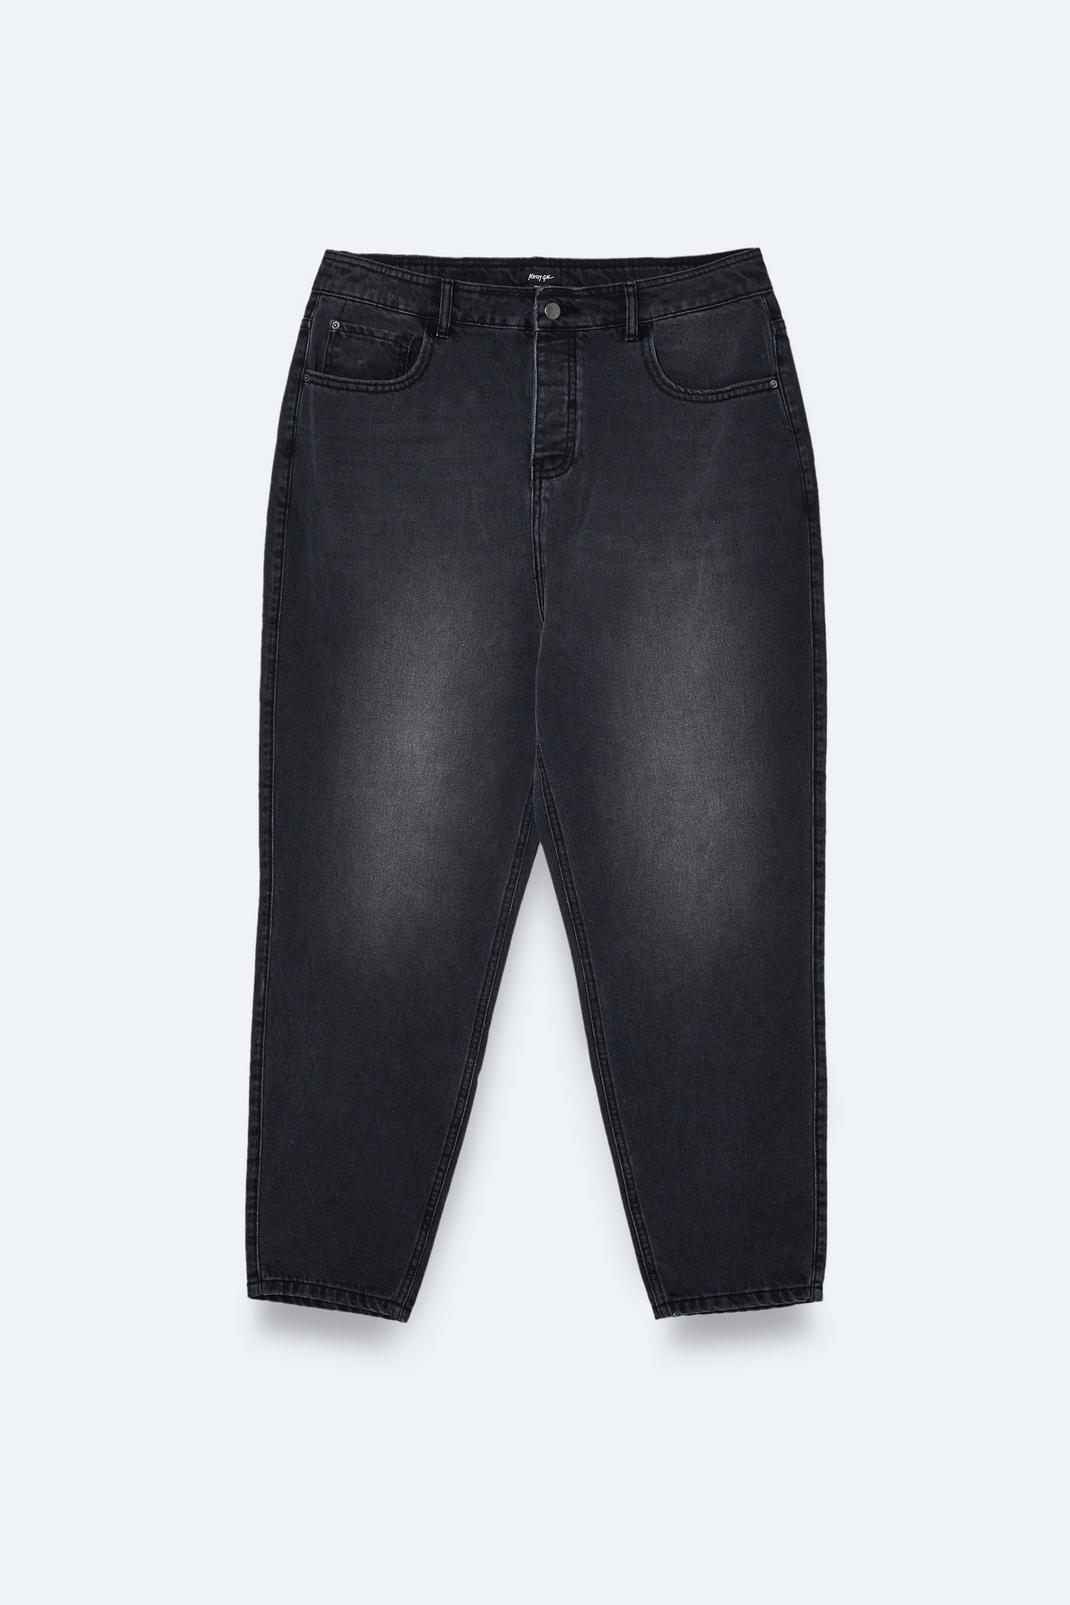 Washed black Plus Size Denim Mom Jeans image number 1